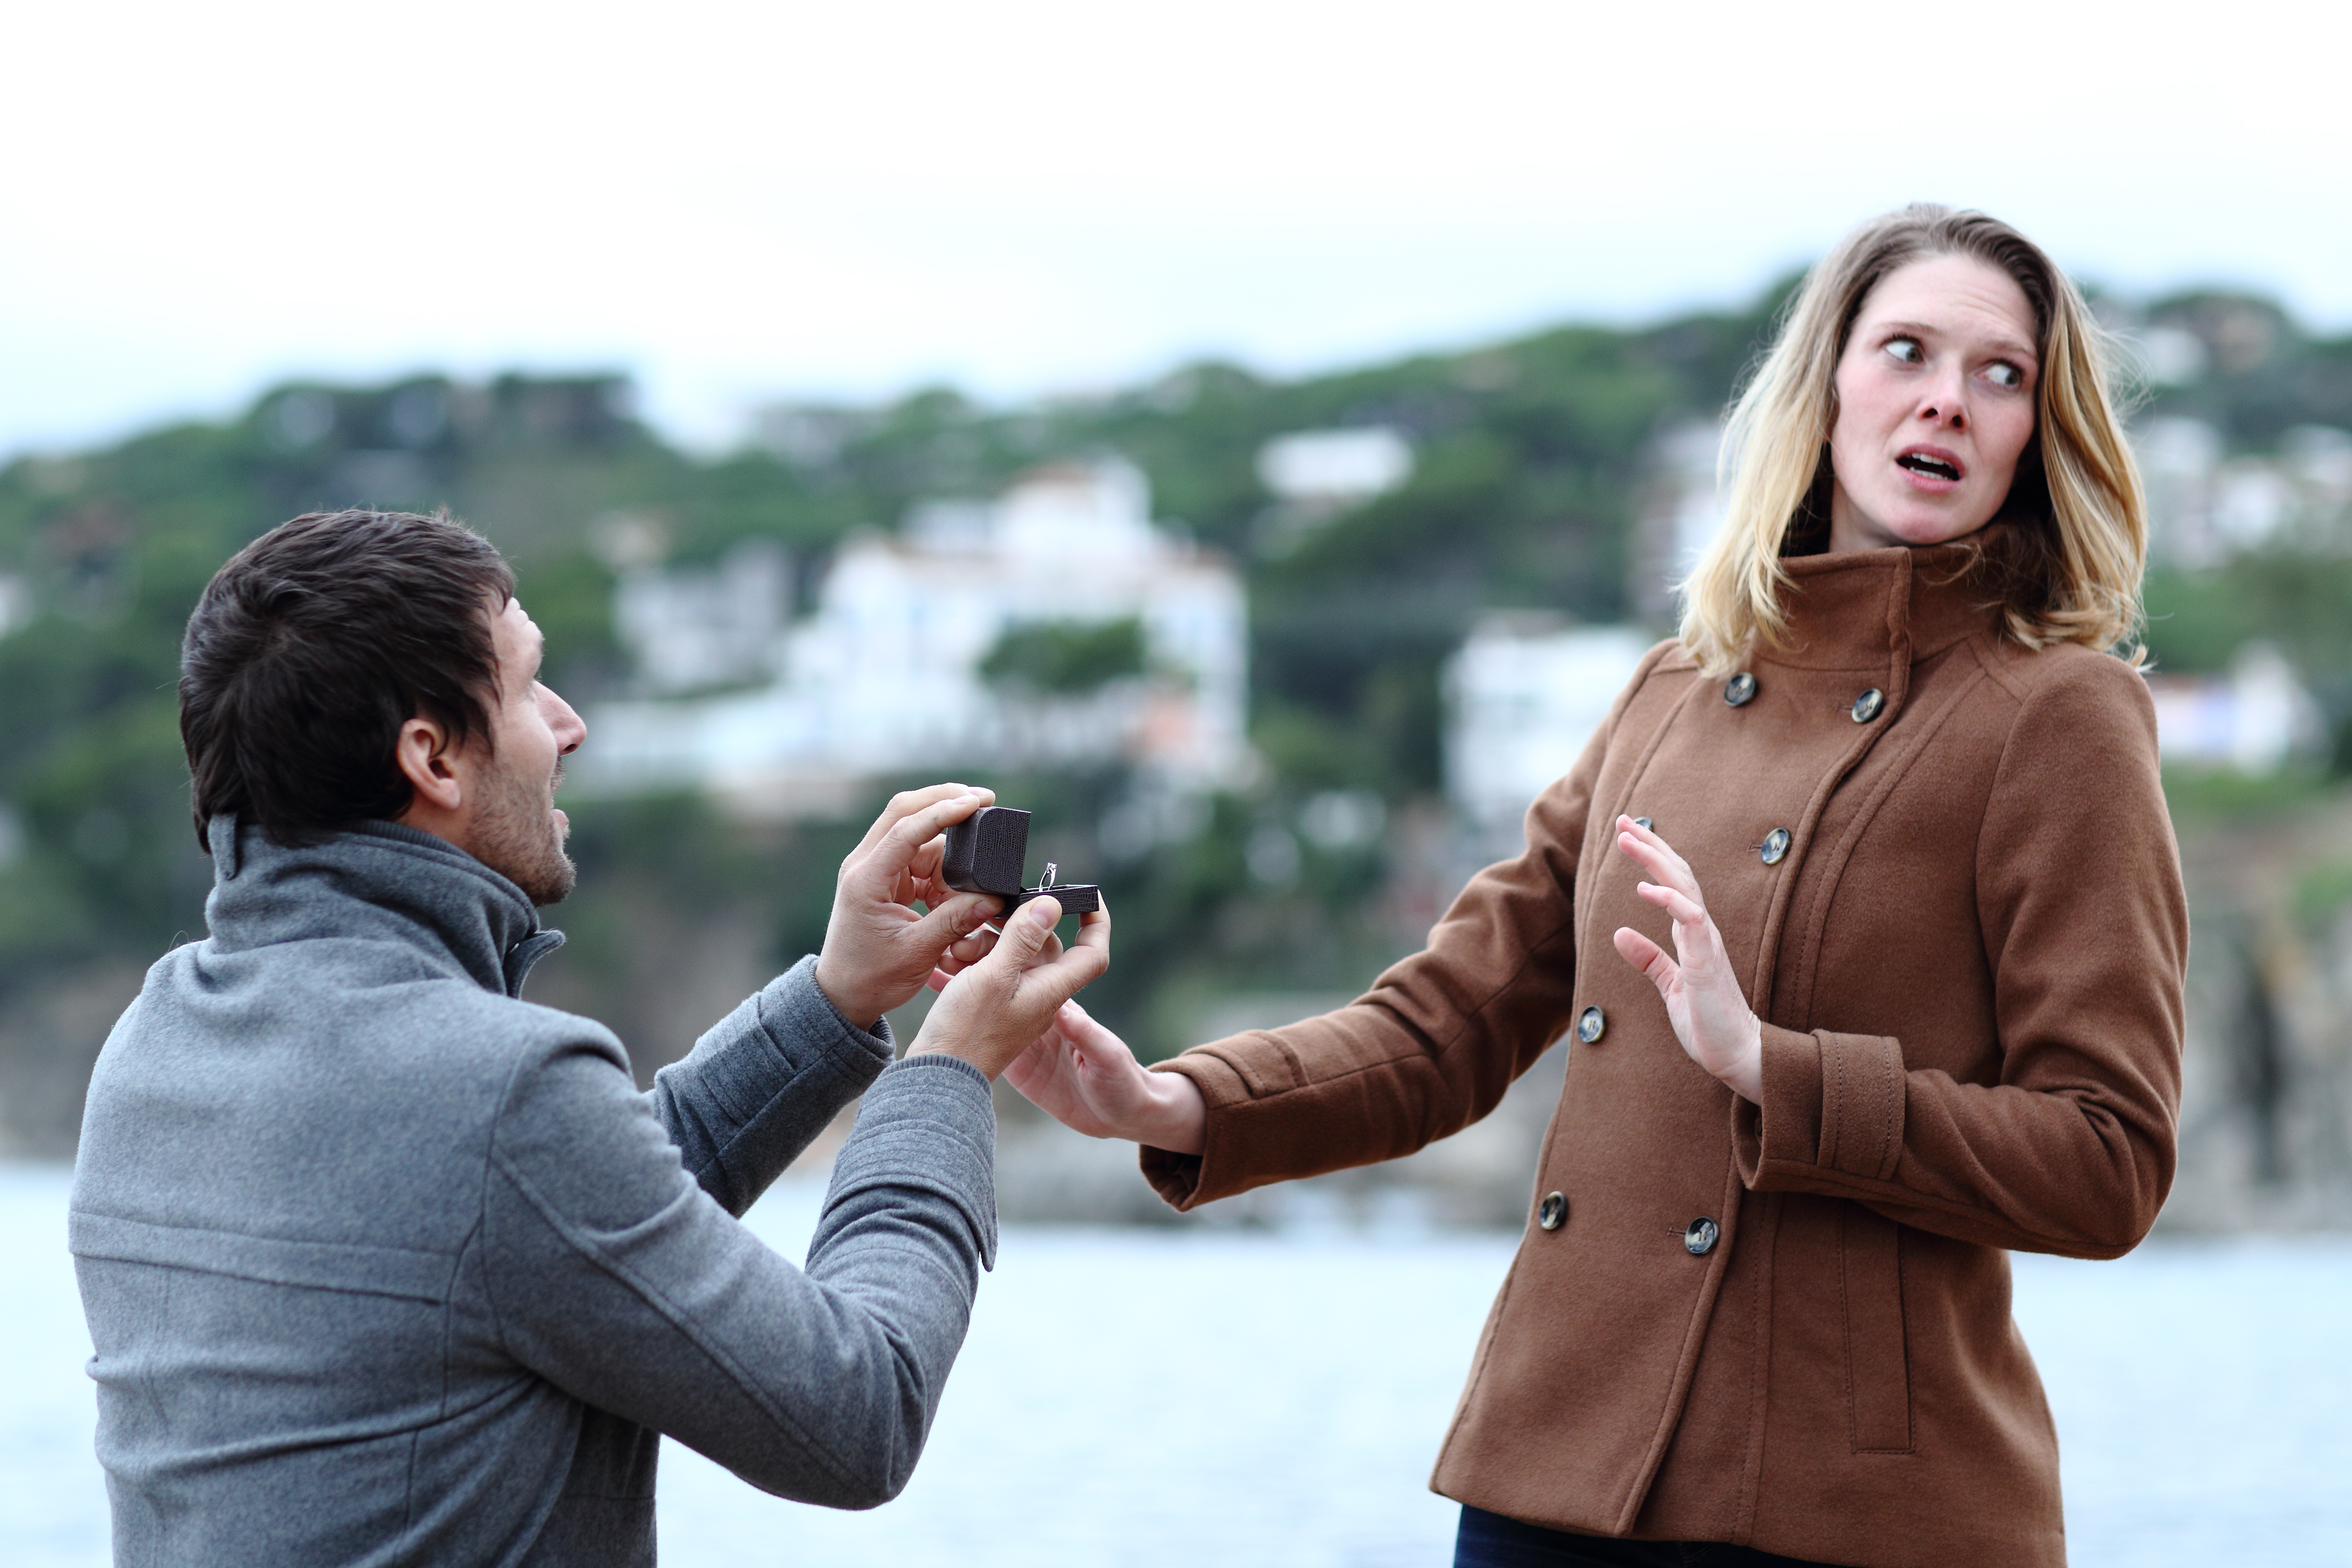 Mann macht einer Frau einen Heiratsantrag | Quelle: Shutterstock